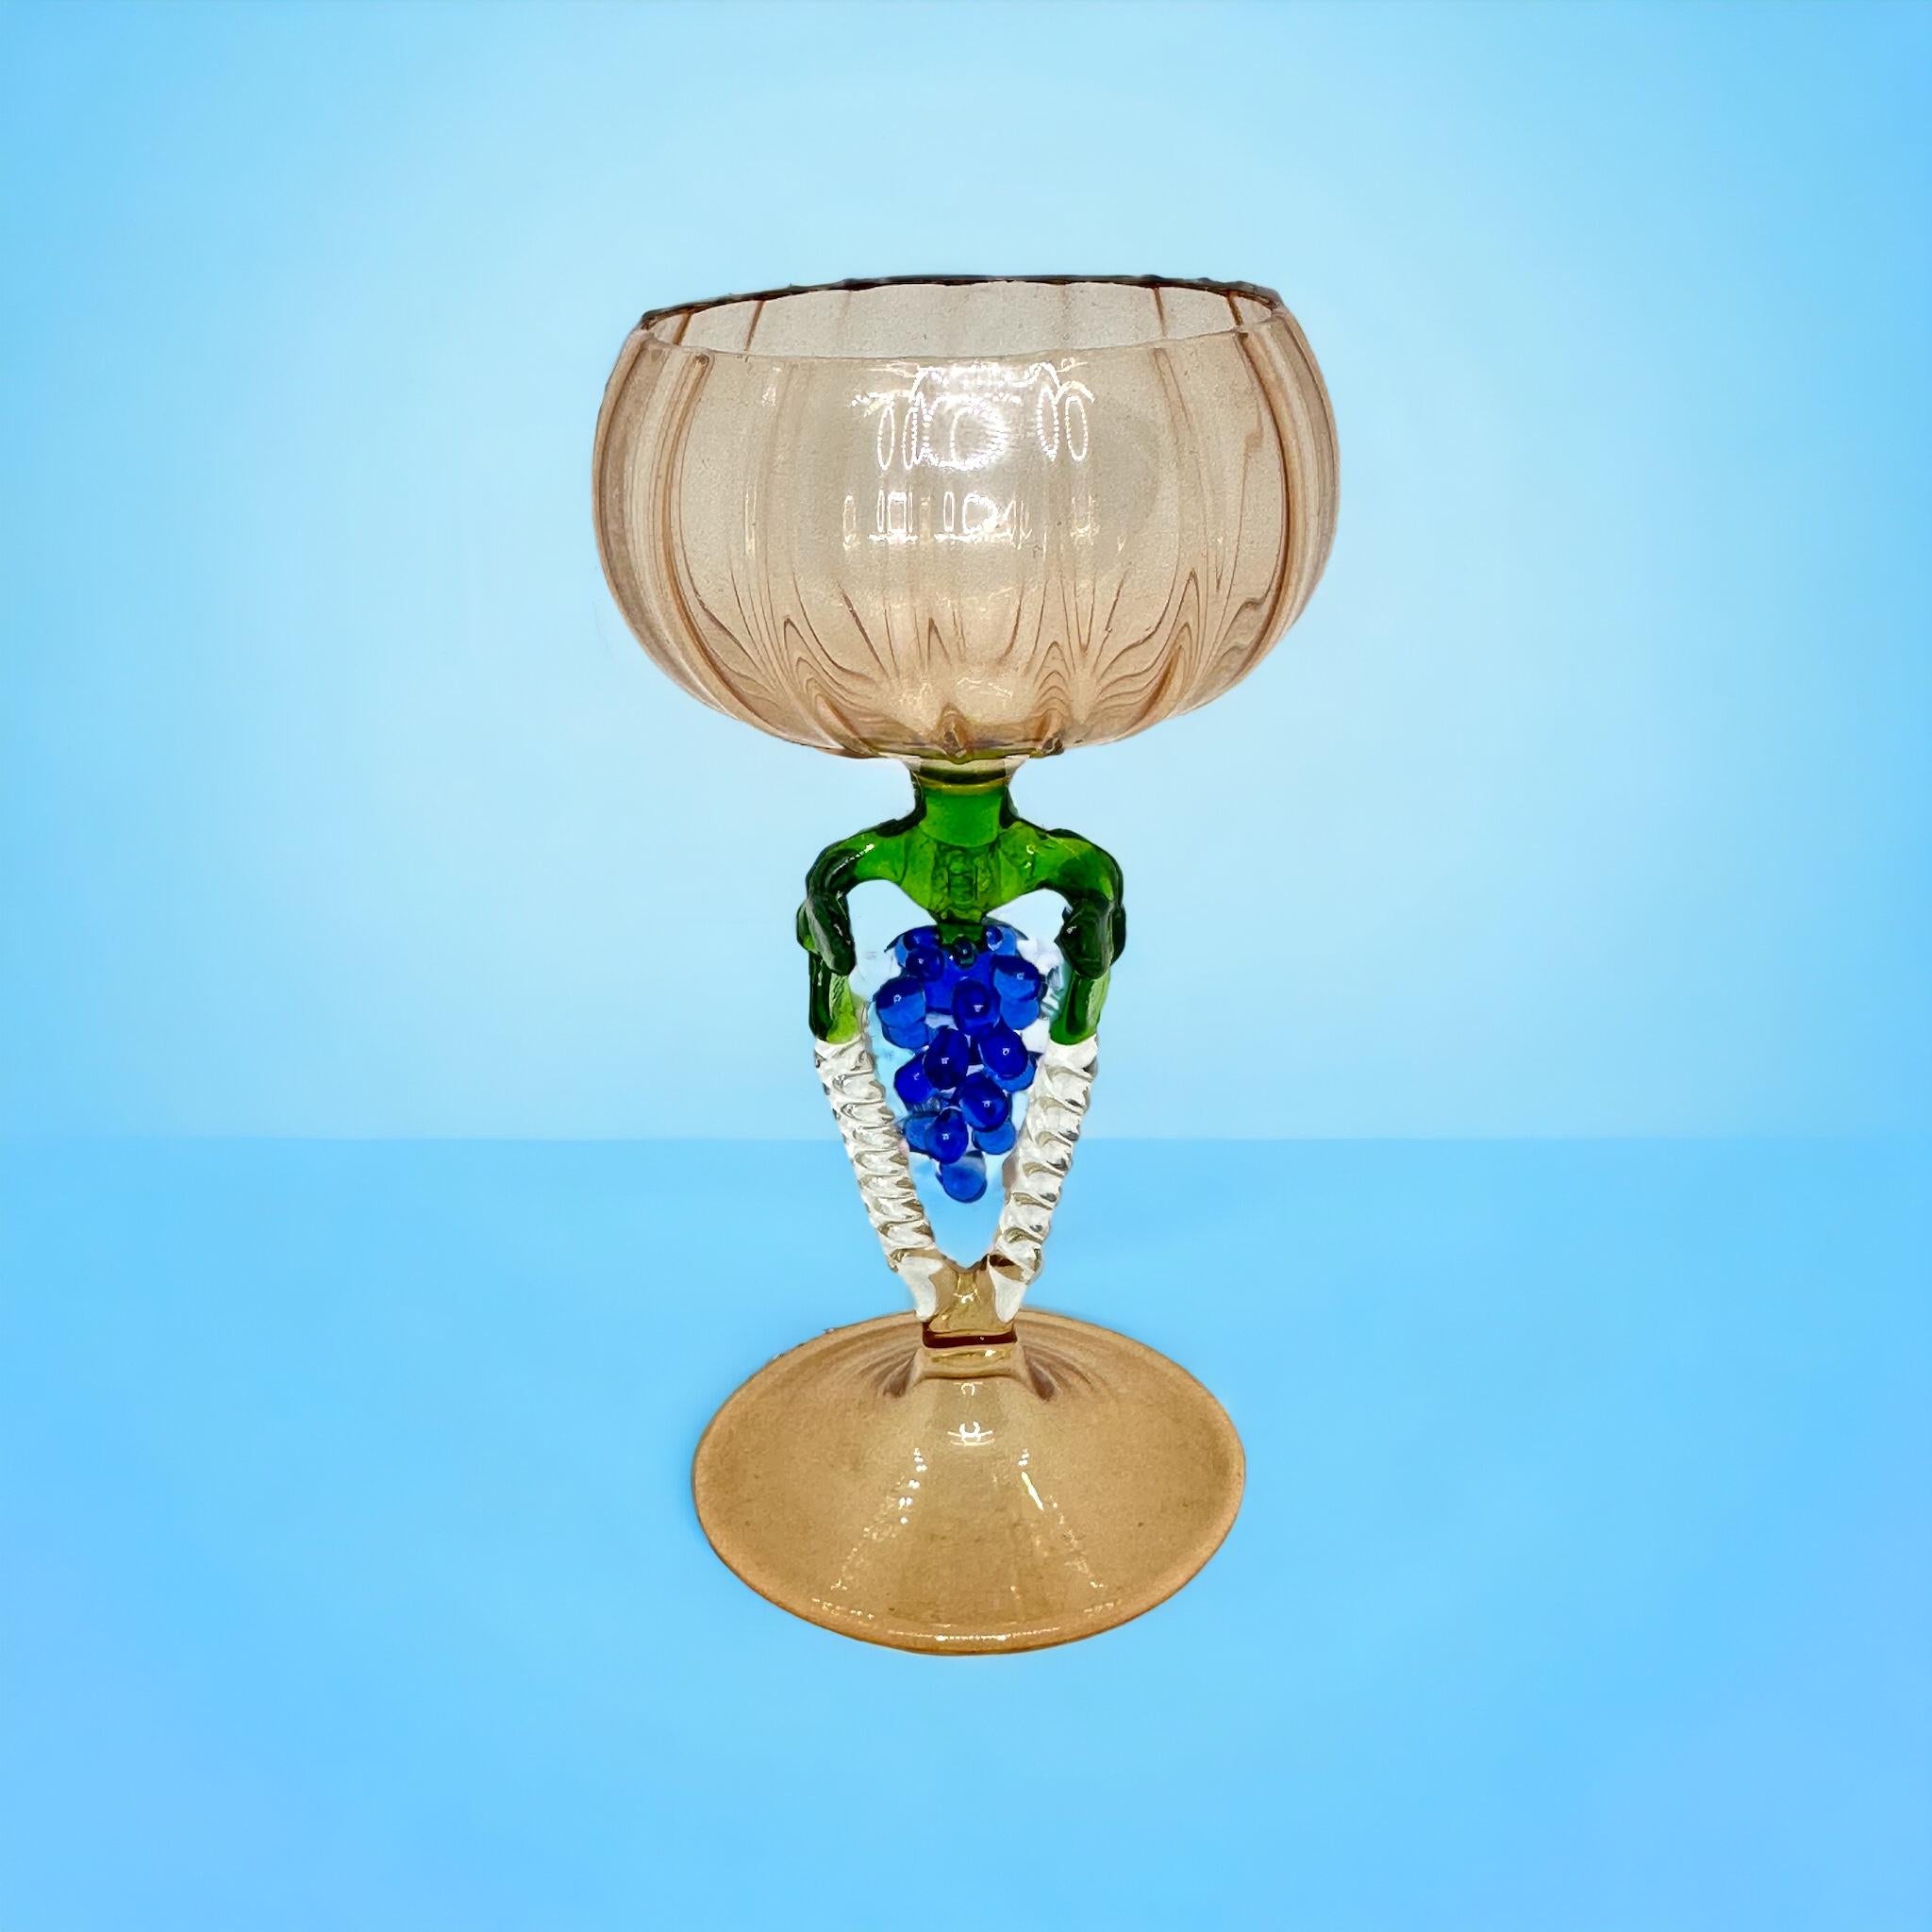 Il s'agit d'un magnifique verre à cocktail à pied d'Autriche. Il représente un arbre à grappes de raisin et est de style artistique bimini. Le verre rose pâle est orné d'un motif en relief, le pied est une grappe de raisin de couleur bleue. La base